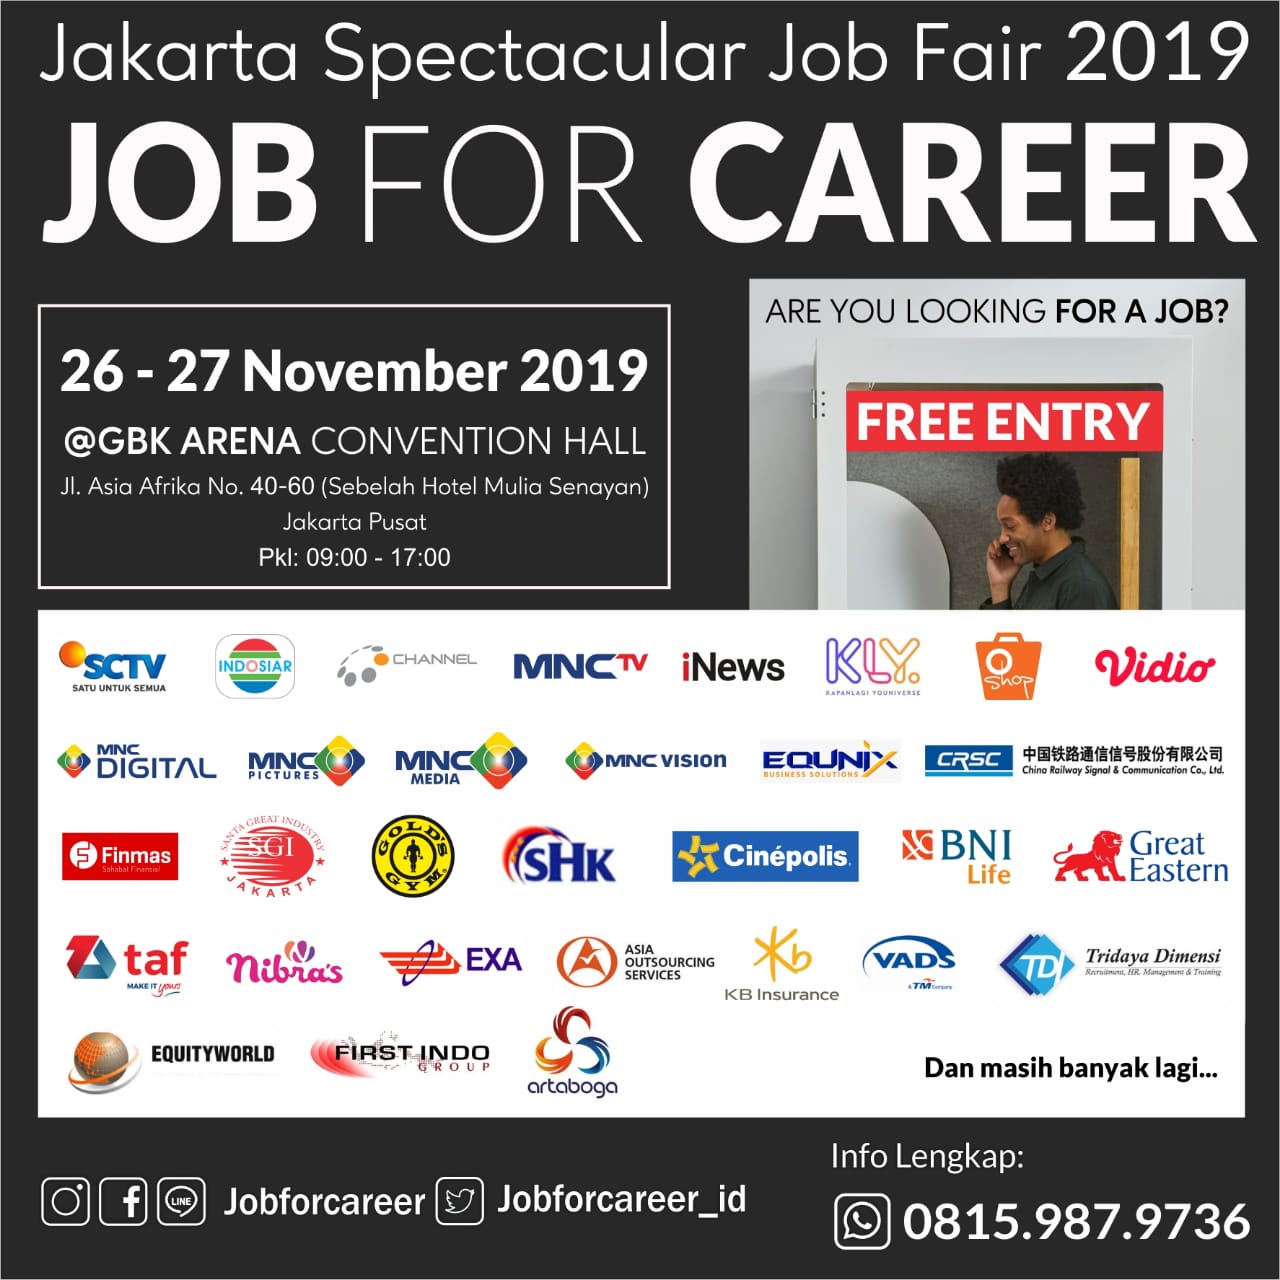 Job Fair “Job For Career”